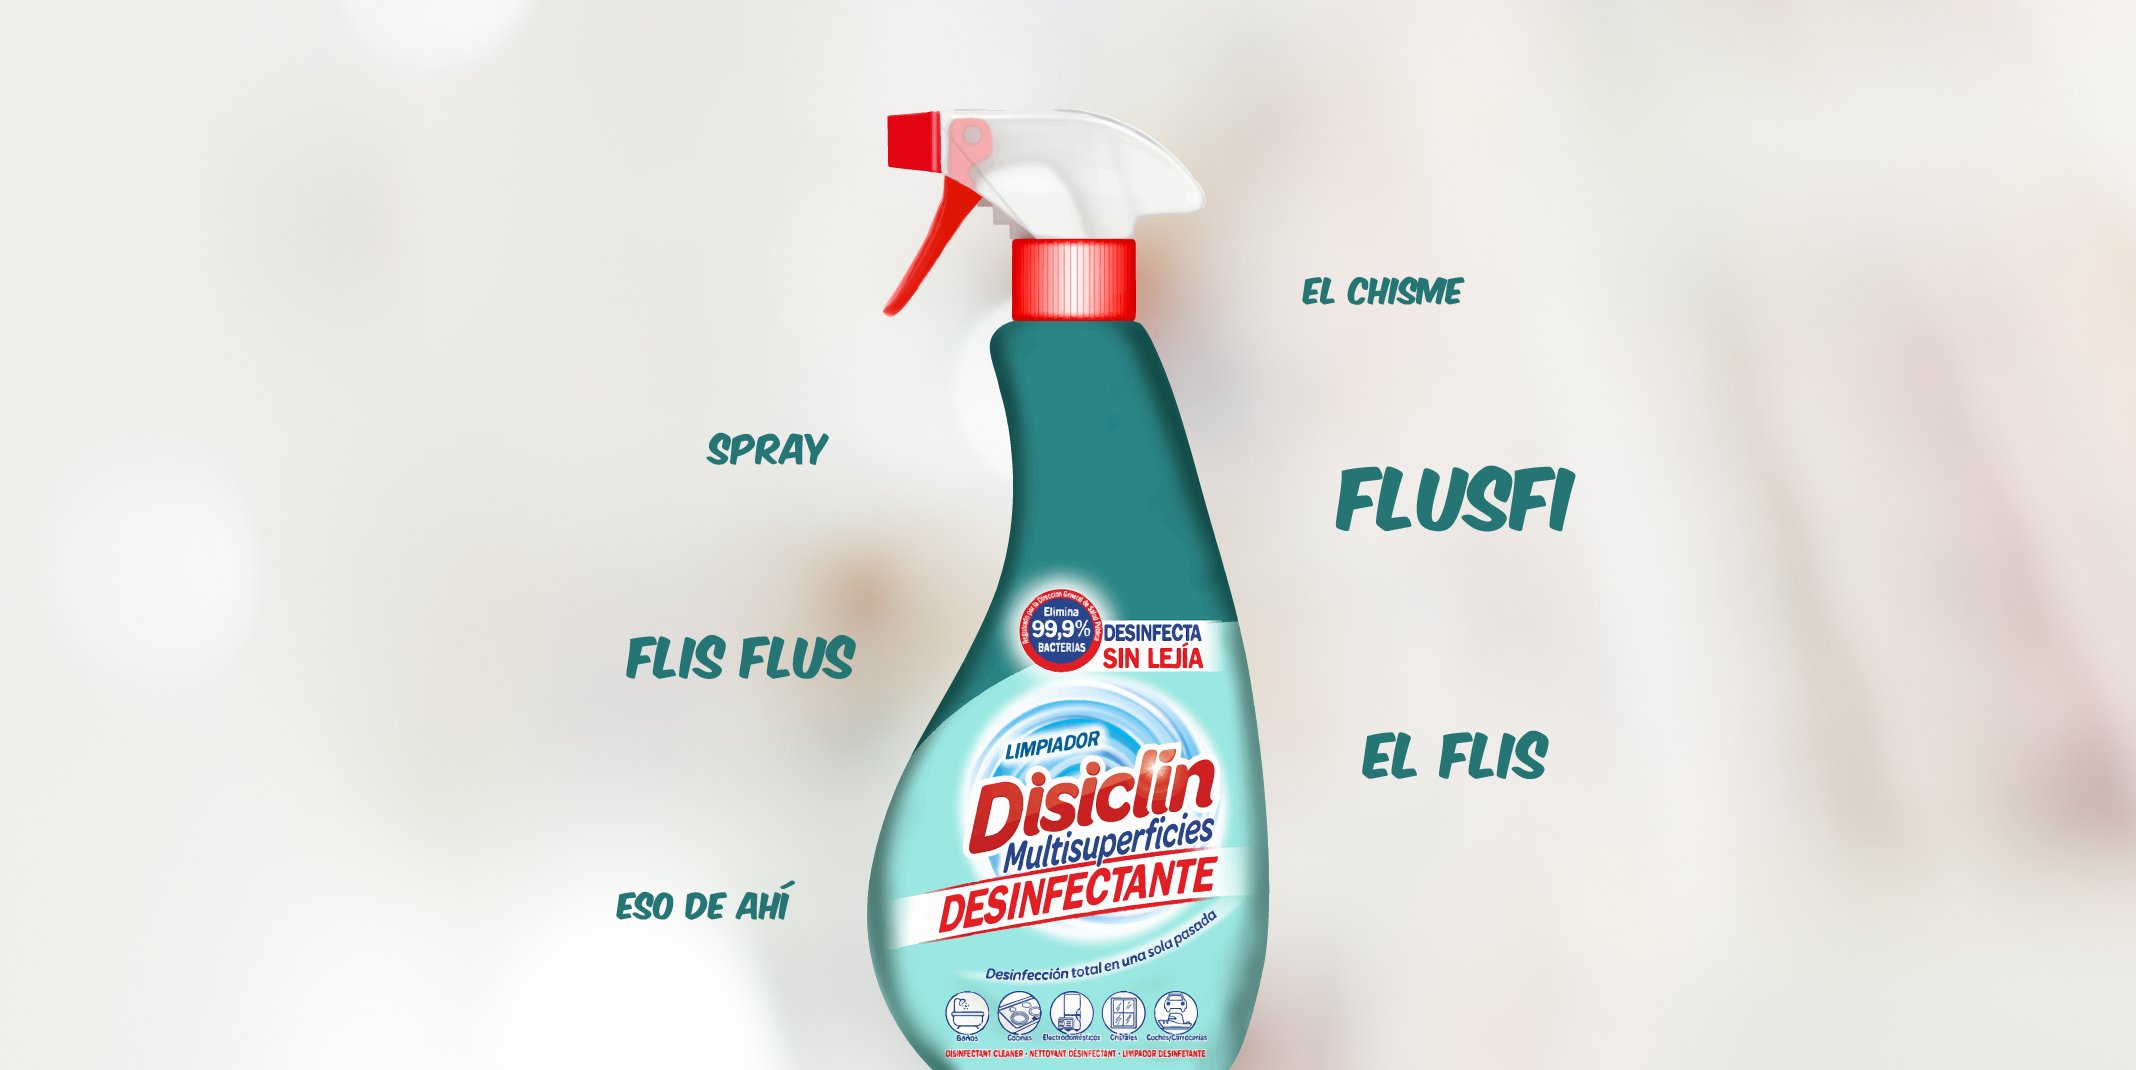 Disiclin on X: ¡Qué comience el debate! 😆 Flisflus, spray, el flis  ¿cuál es nombre correcto en vuestra casa? 🏠  / X